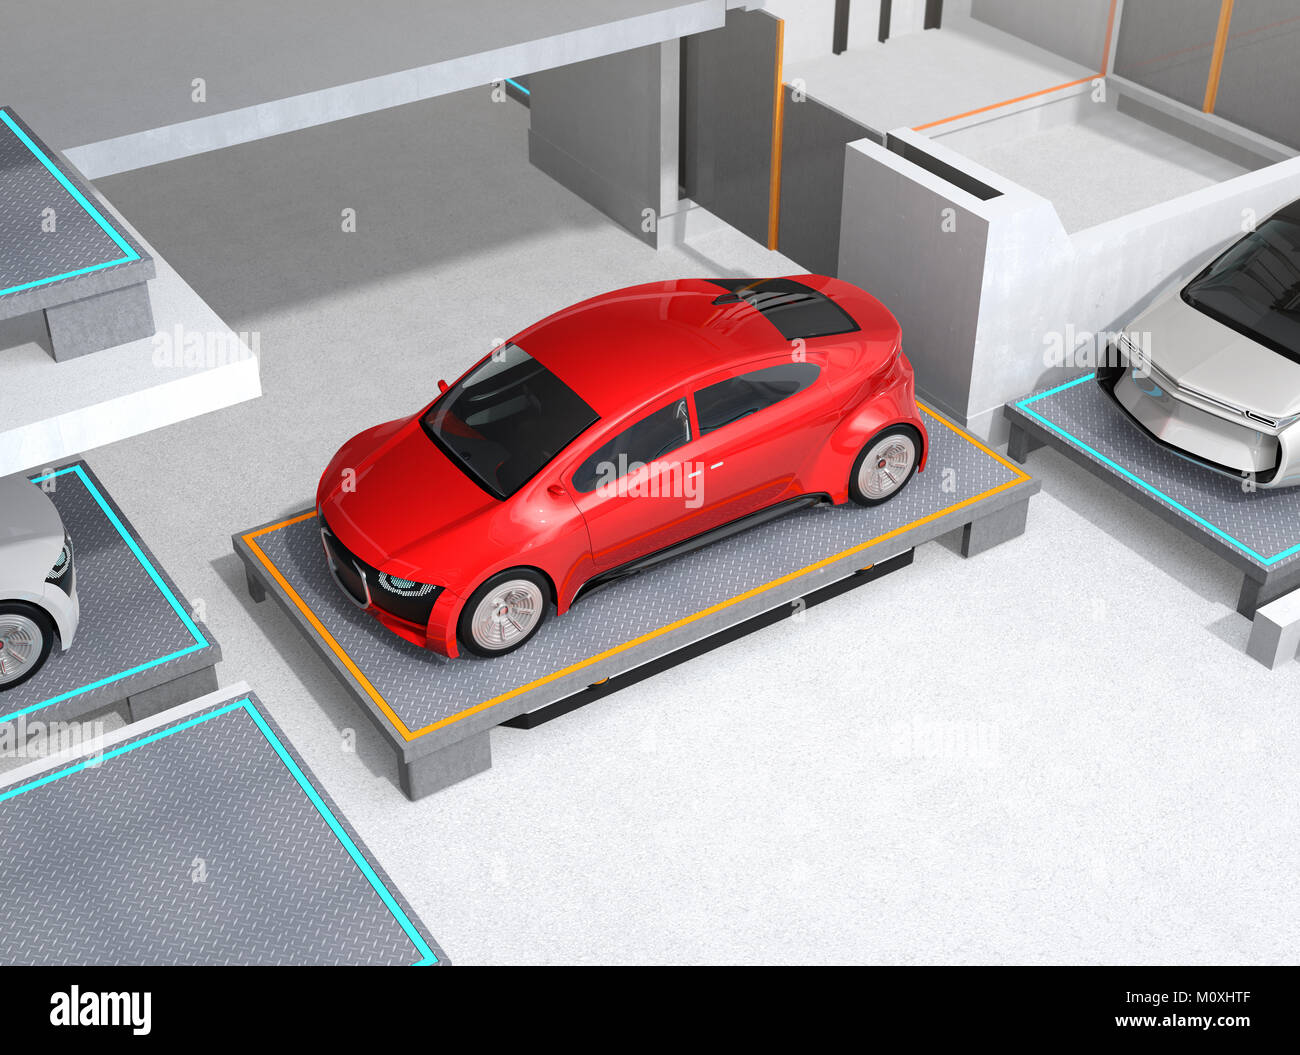 Vehículos de guiado Automatizado (AGV) llevar coche rojo de espacio de estacionamiento. Concepto de sistema de aparcamiento automático. Representación 3D imagen. Foto de stock